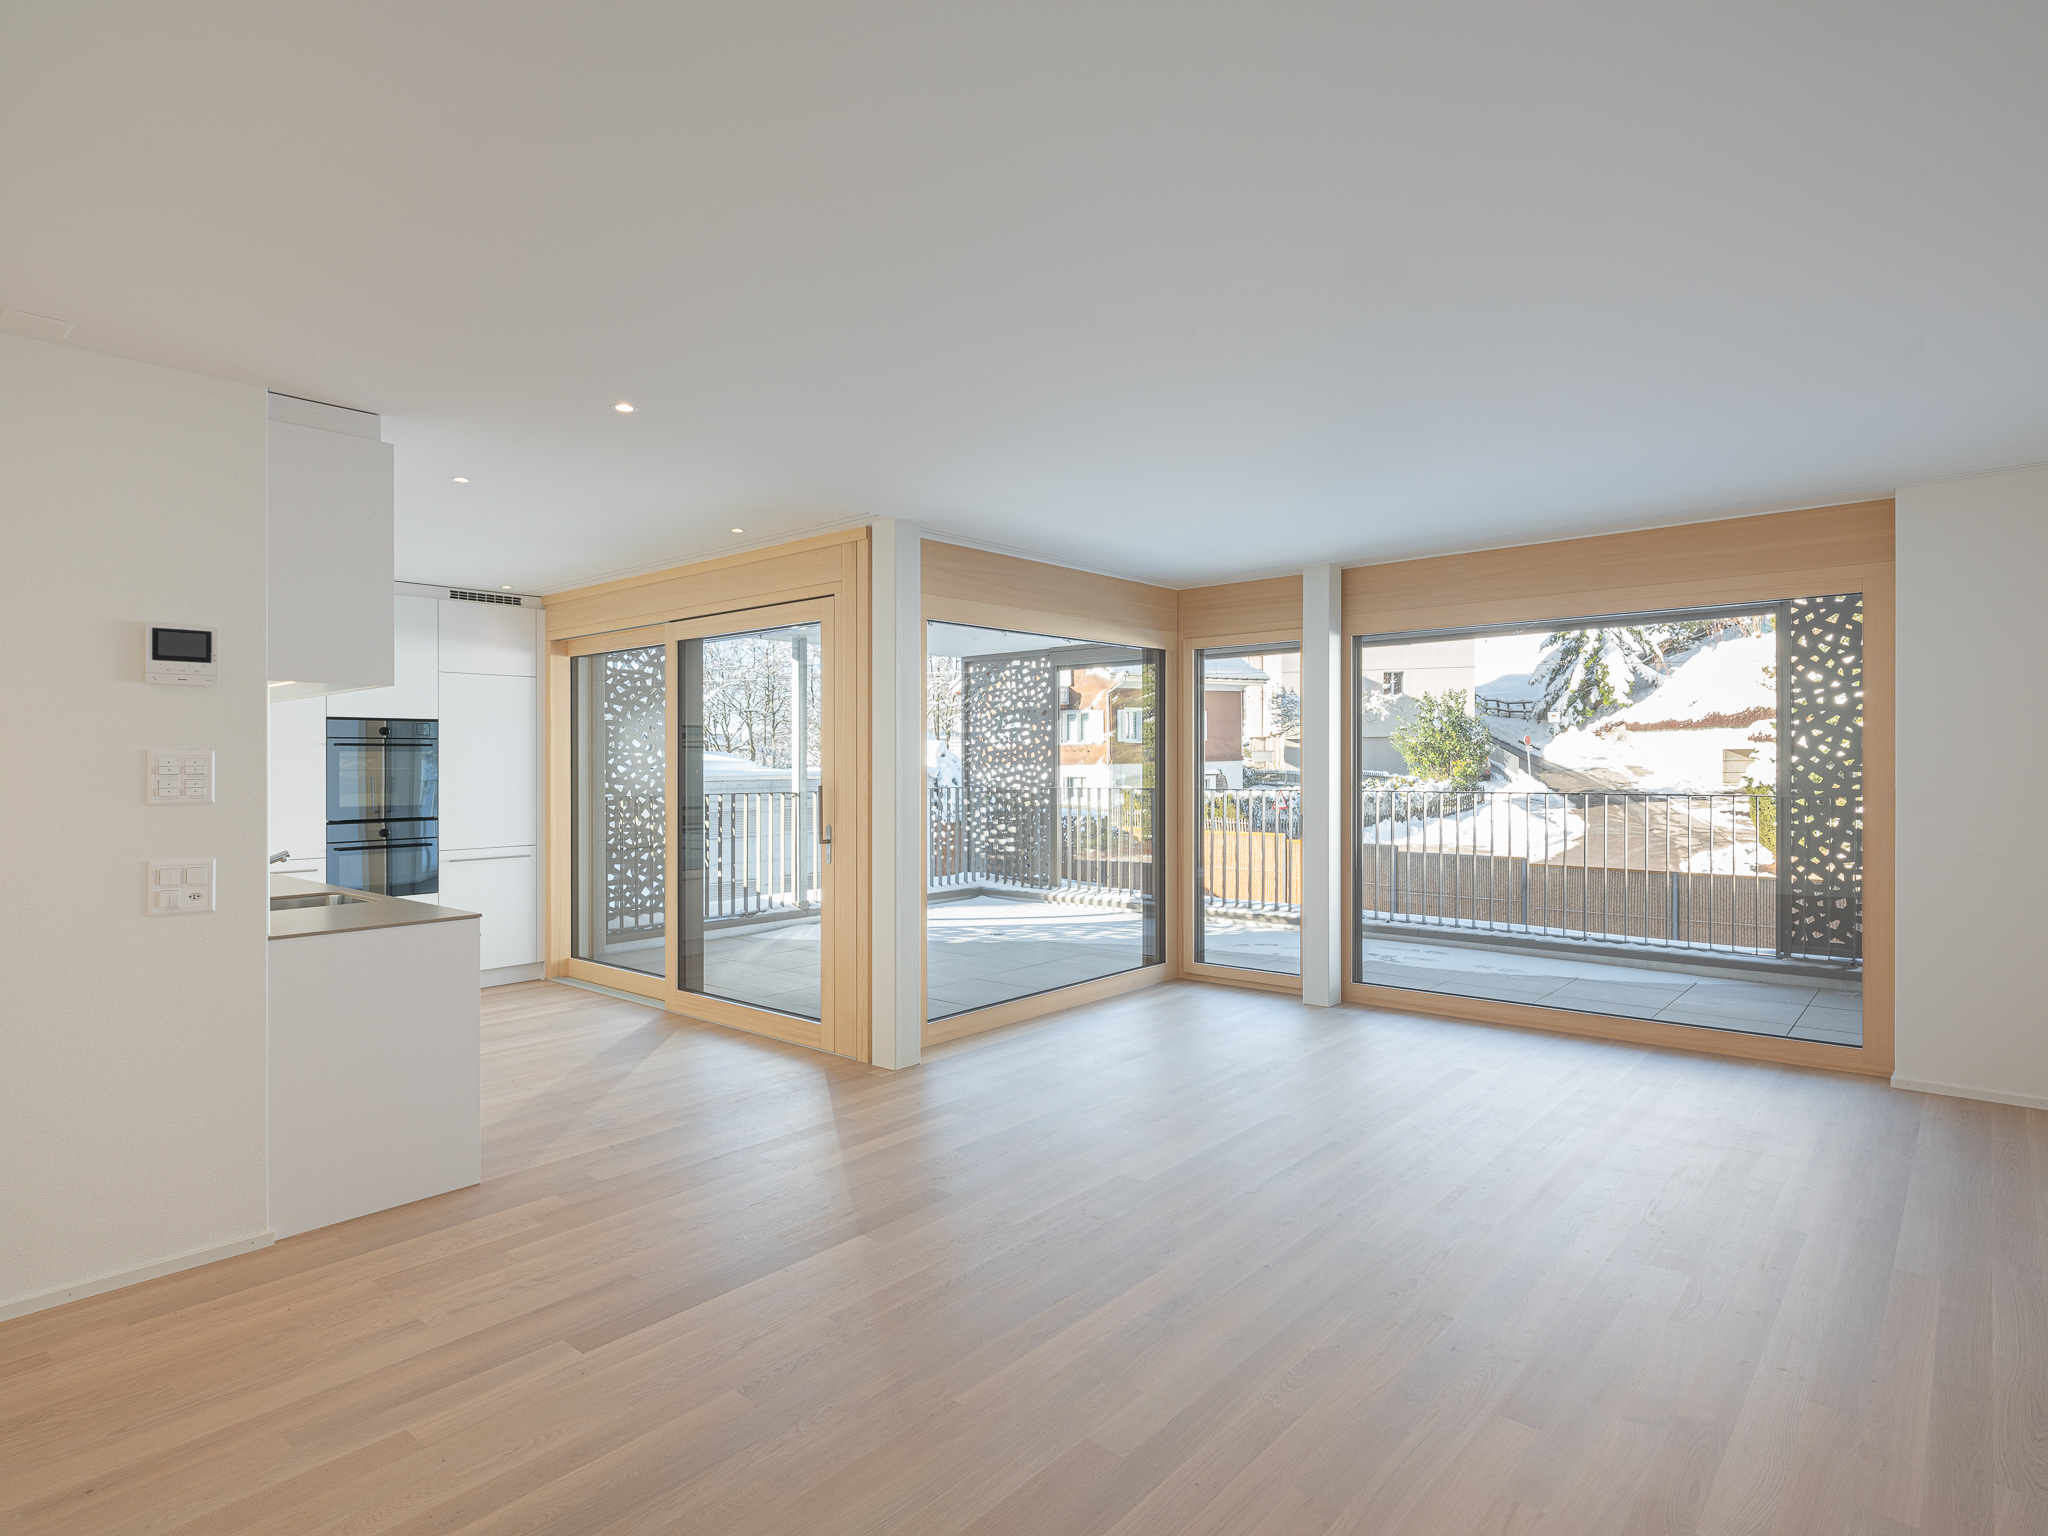 Offener Wohnraum mit Küche, Ess- und Wohnzimmer mit Ausblick auf einen Balkon.